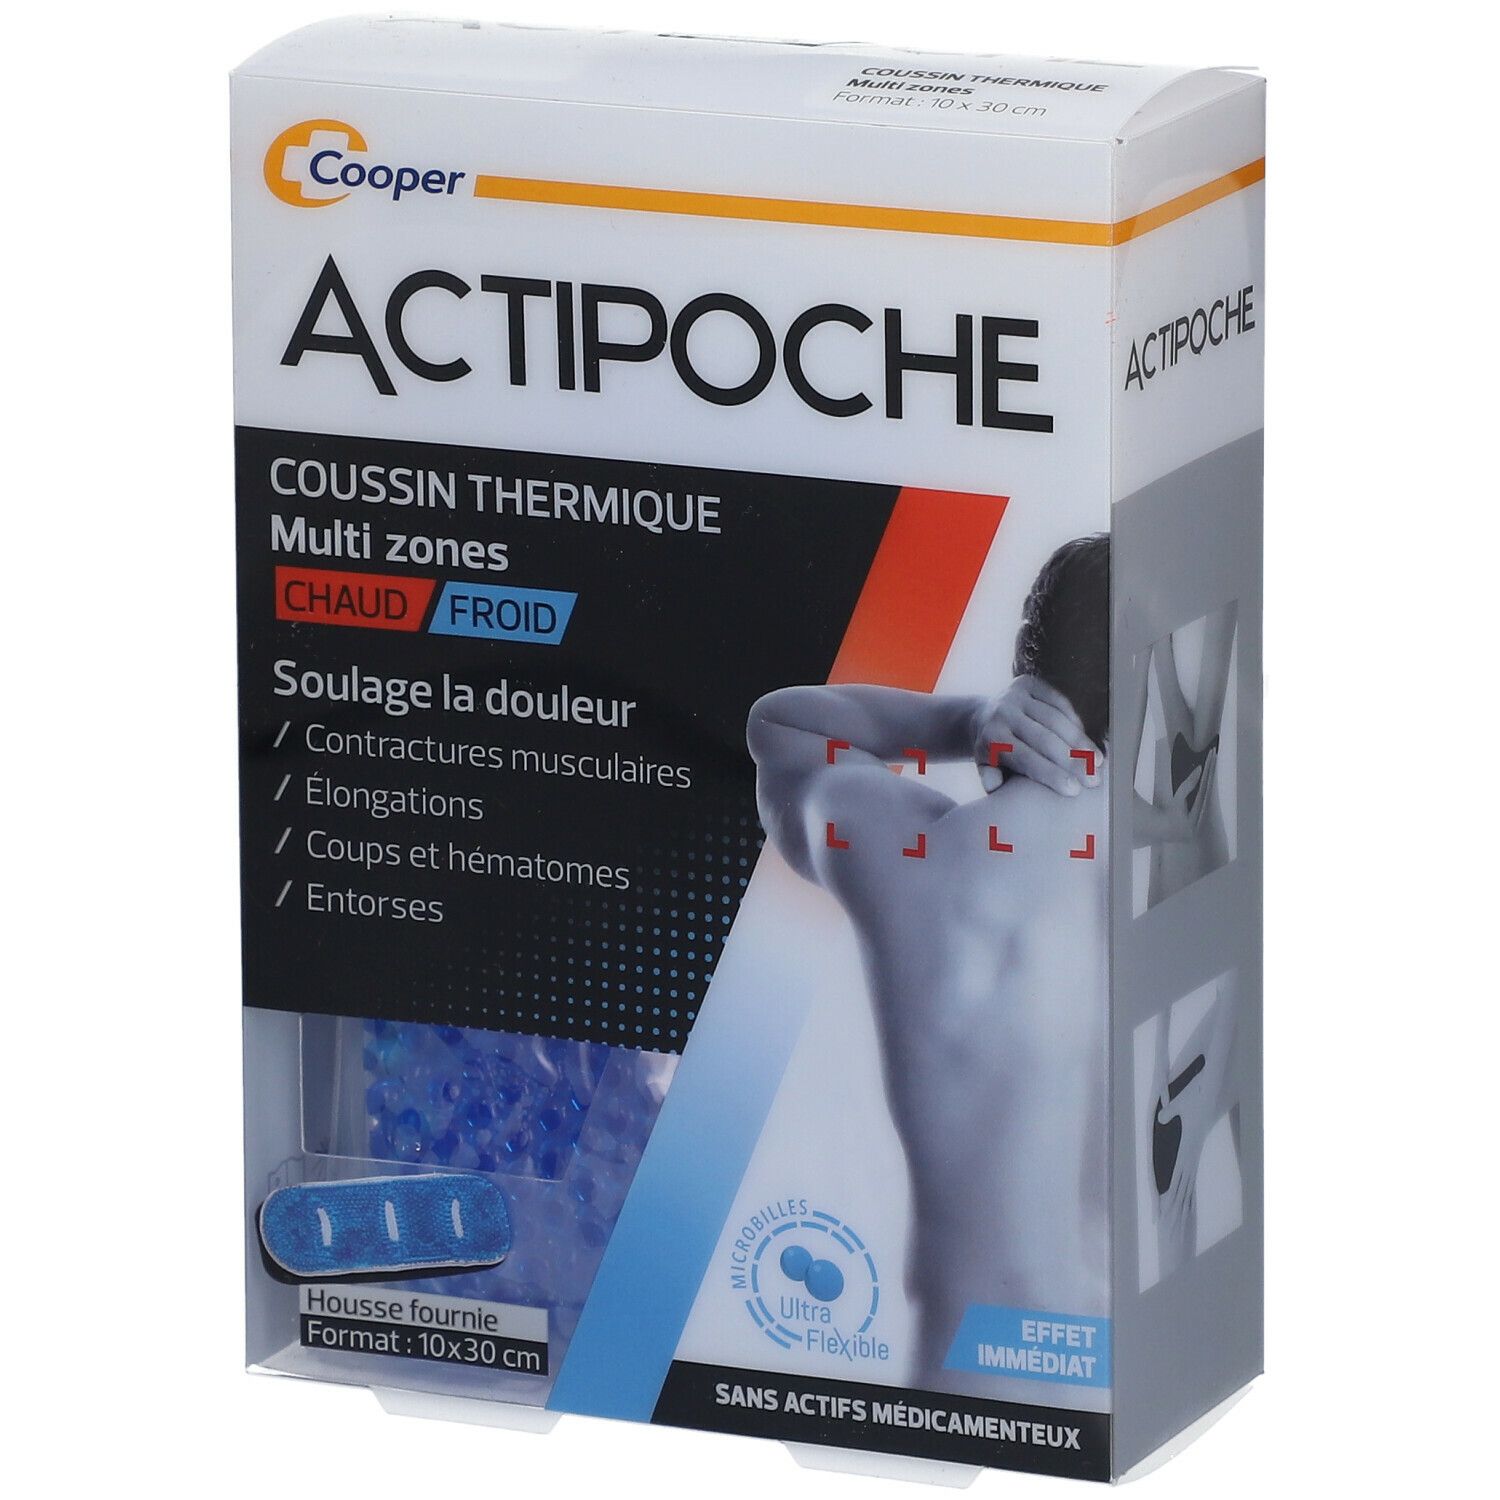 Actipoche Coussin Thermique Multizones Microbilles 10 cm x 30 cm